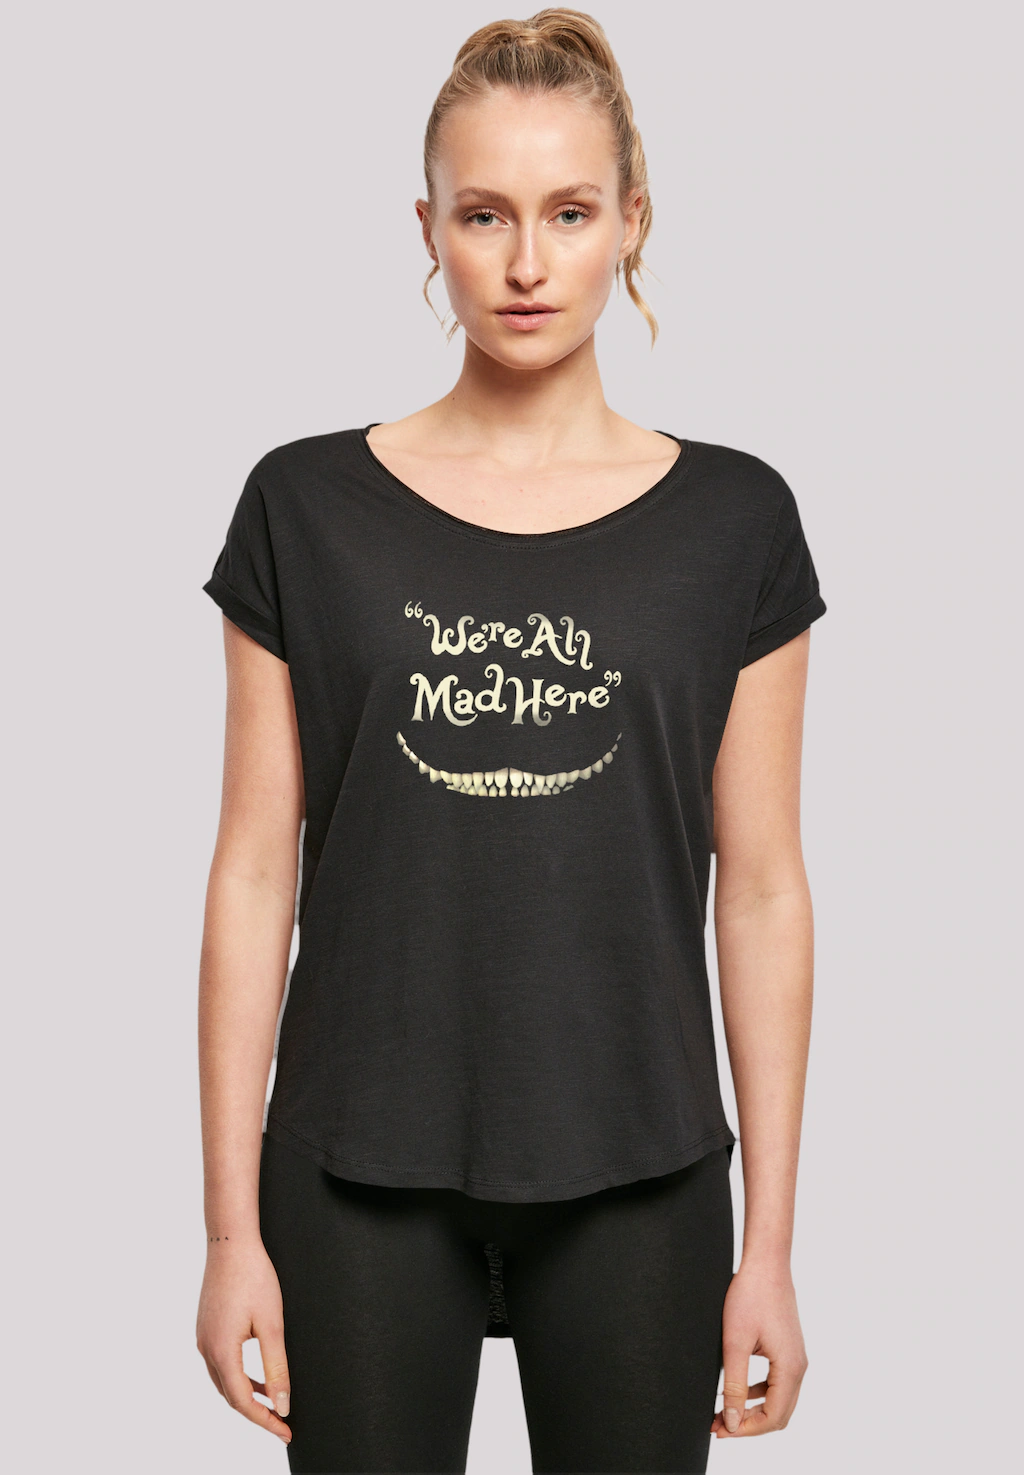 F4NT4STIC T-Shirt "Disney Alice im Wunderland Mad Here Smile", Premium Qual günstig online kaufen